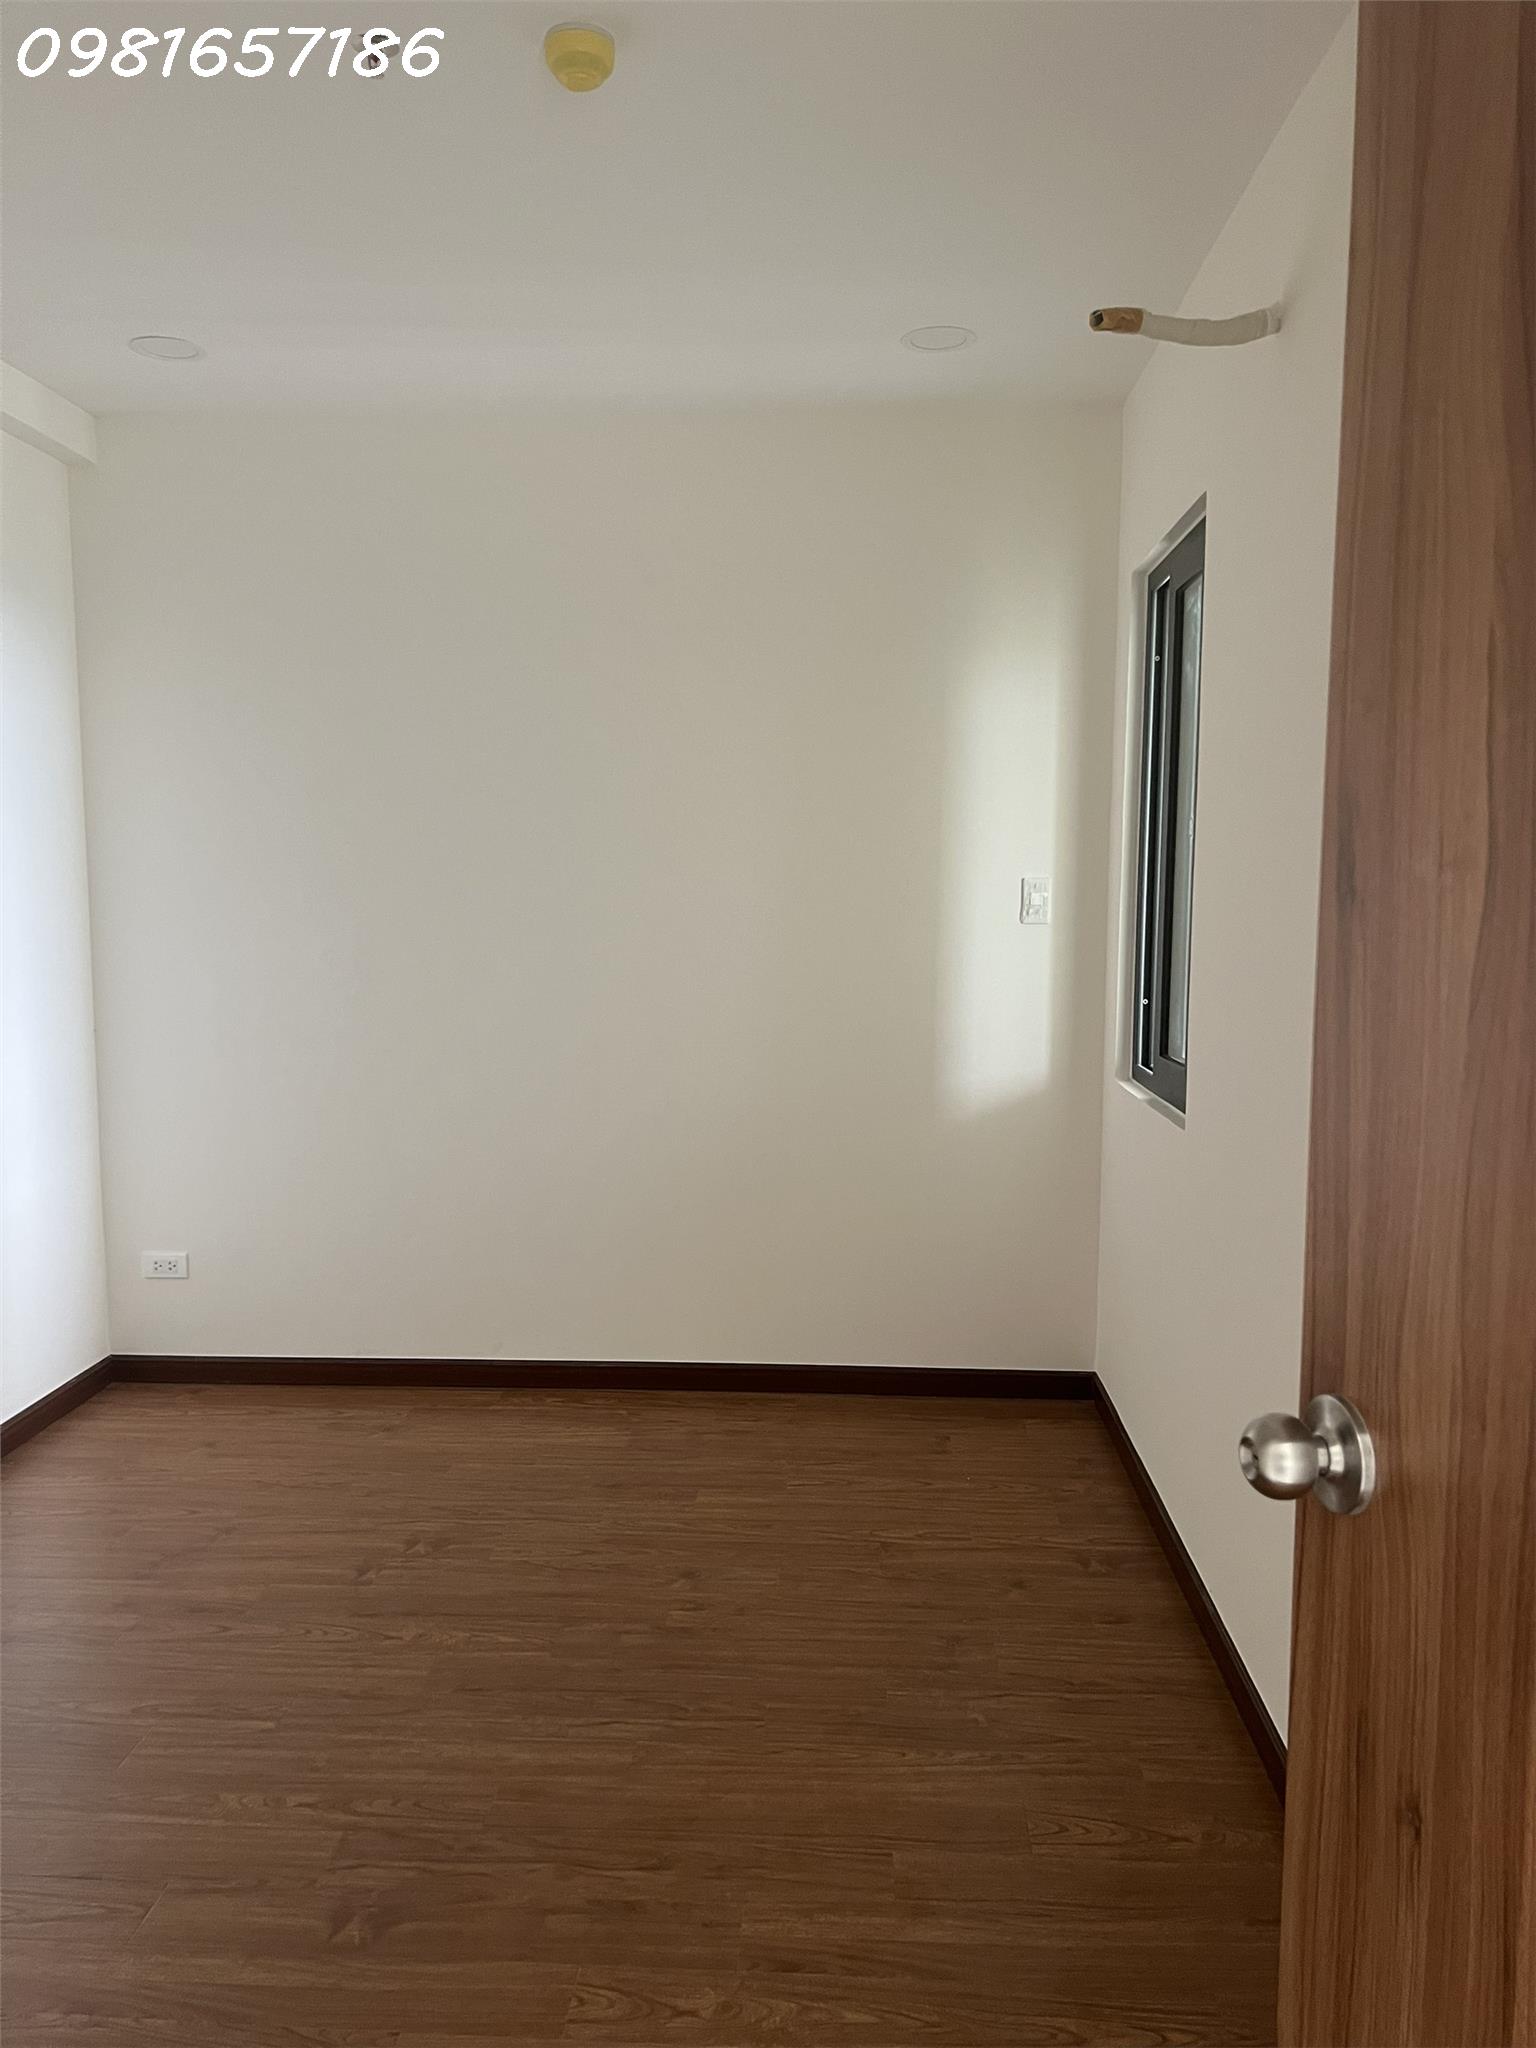 Cho thuê căn hộ dự án Minh Quốc Plaza, 2PN + 2WC - DT 65m2 - Nội thất cơ bản - Ảnh 2